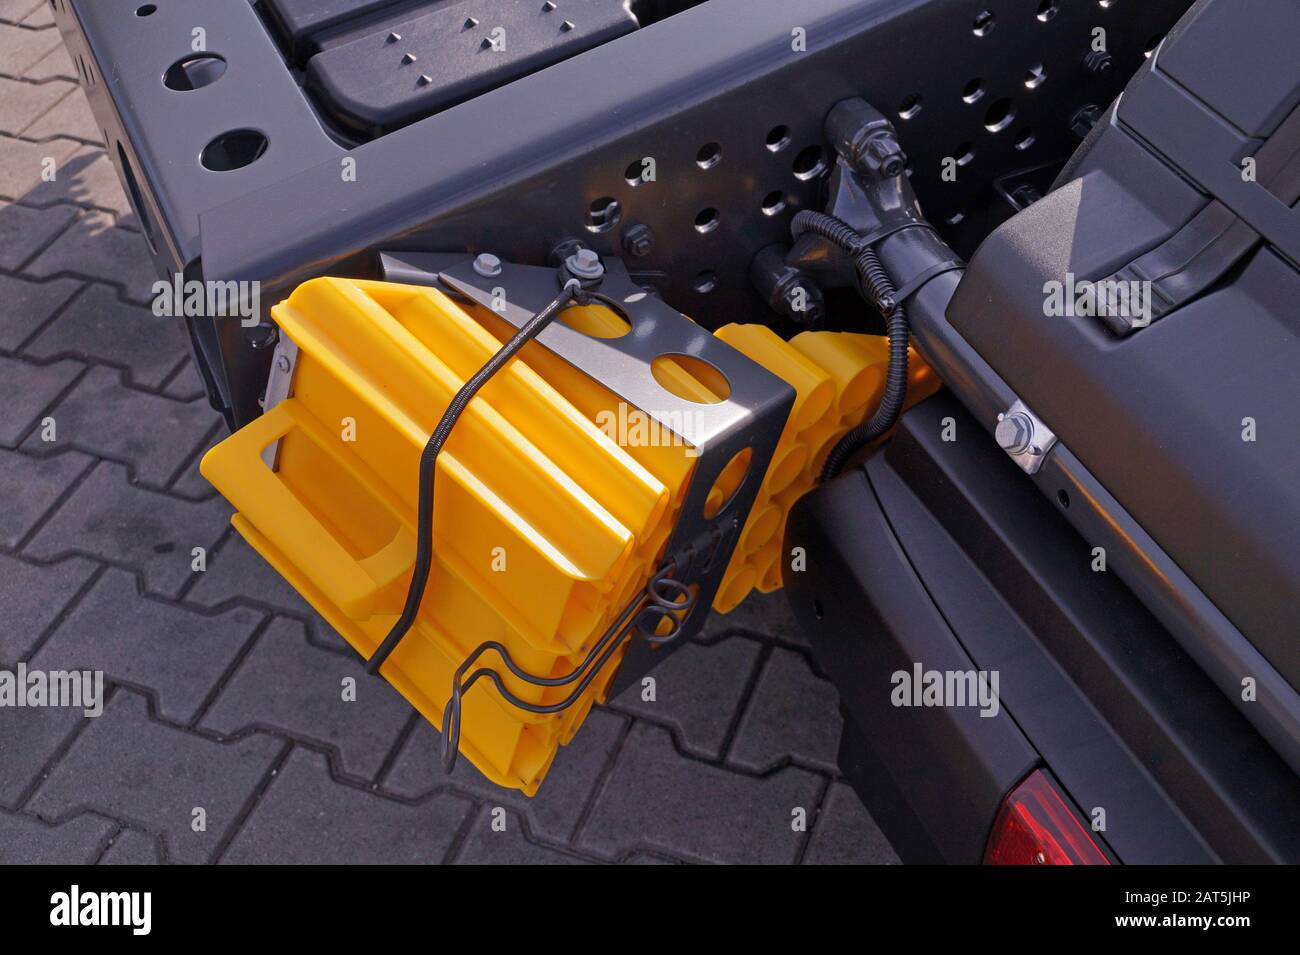 Neue Ausrüstung. Notwendiger Keil der Fahrzeugausrüstung, um ein Wegrollen  des Fahrzeugs zu verhindern Stockfotografie - Alamy